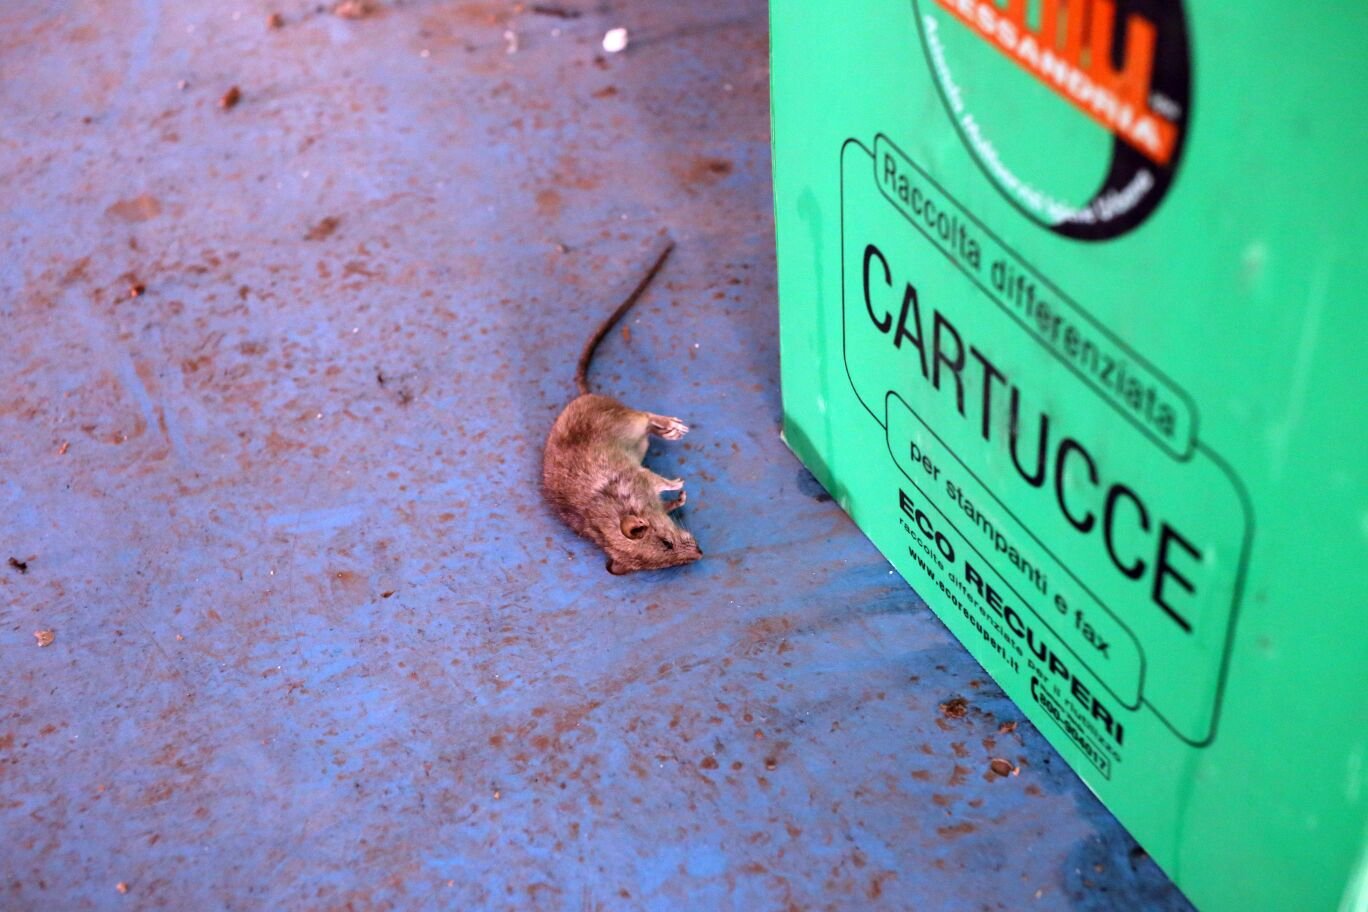 Impiegati disperati: piovono topi morti dal tetto